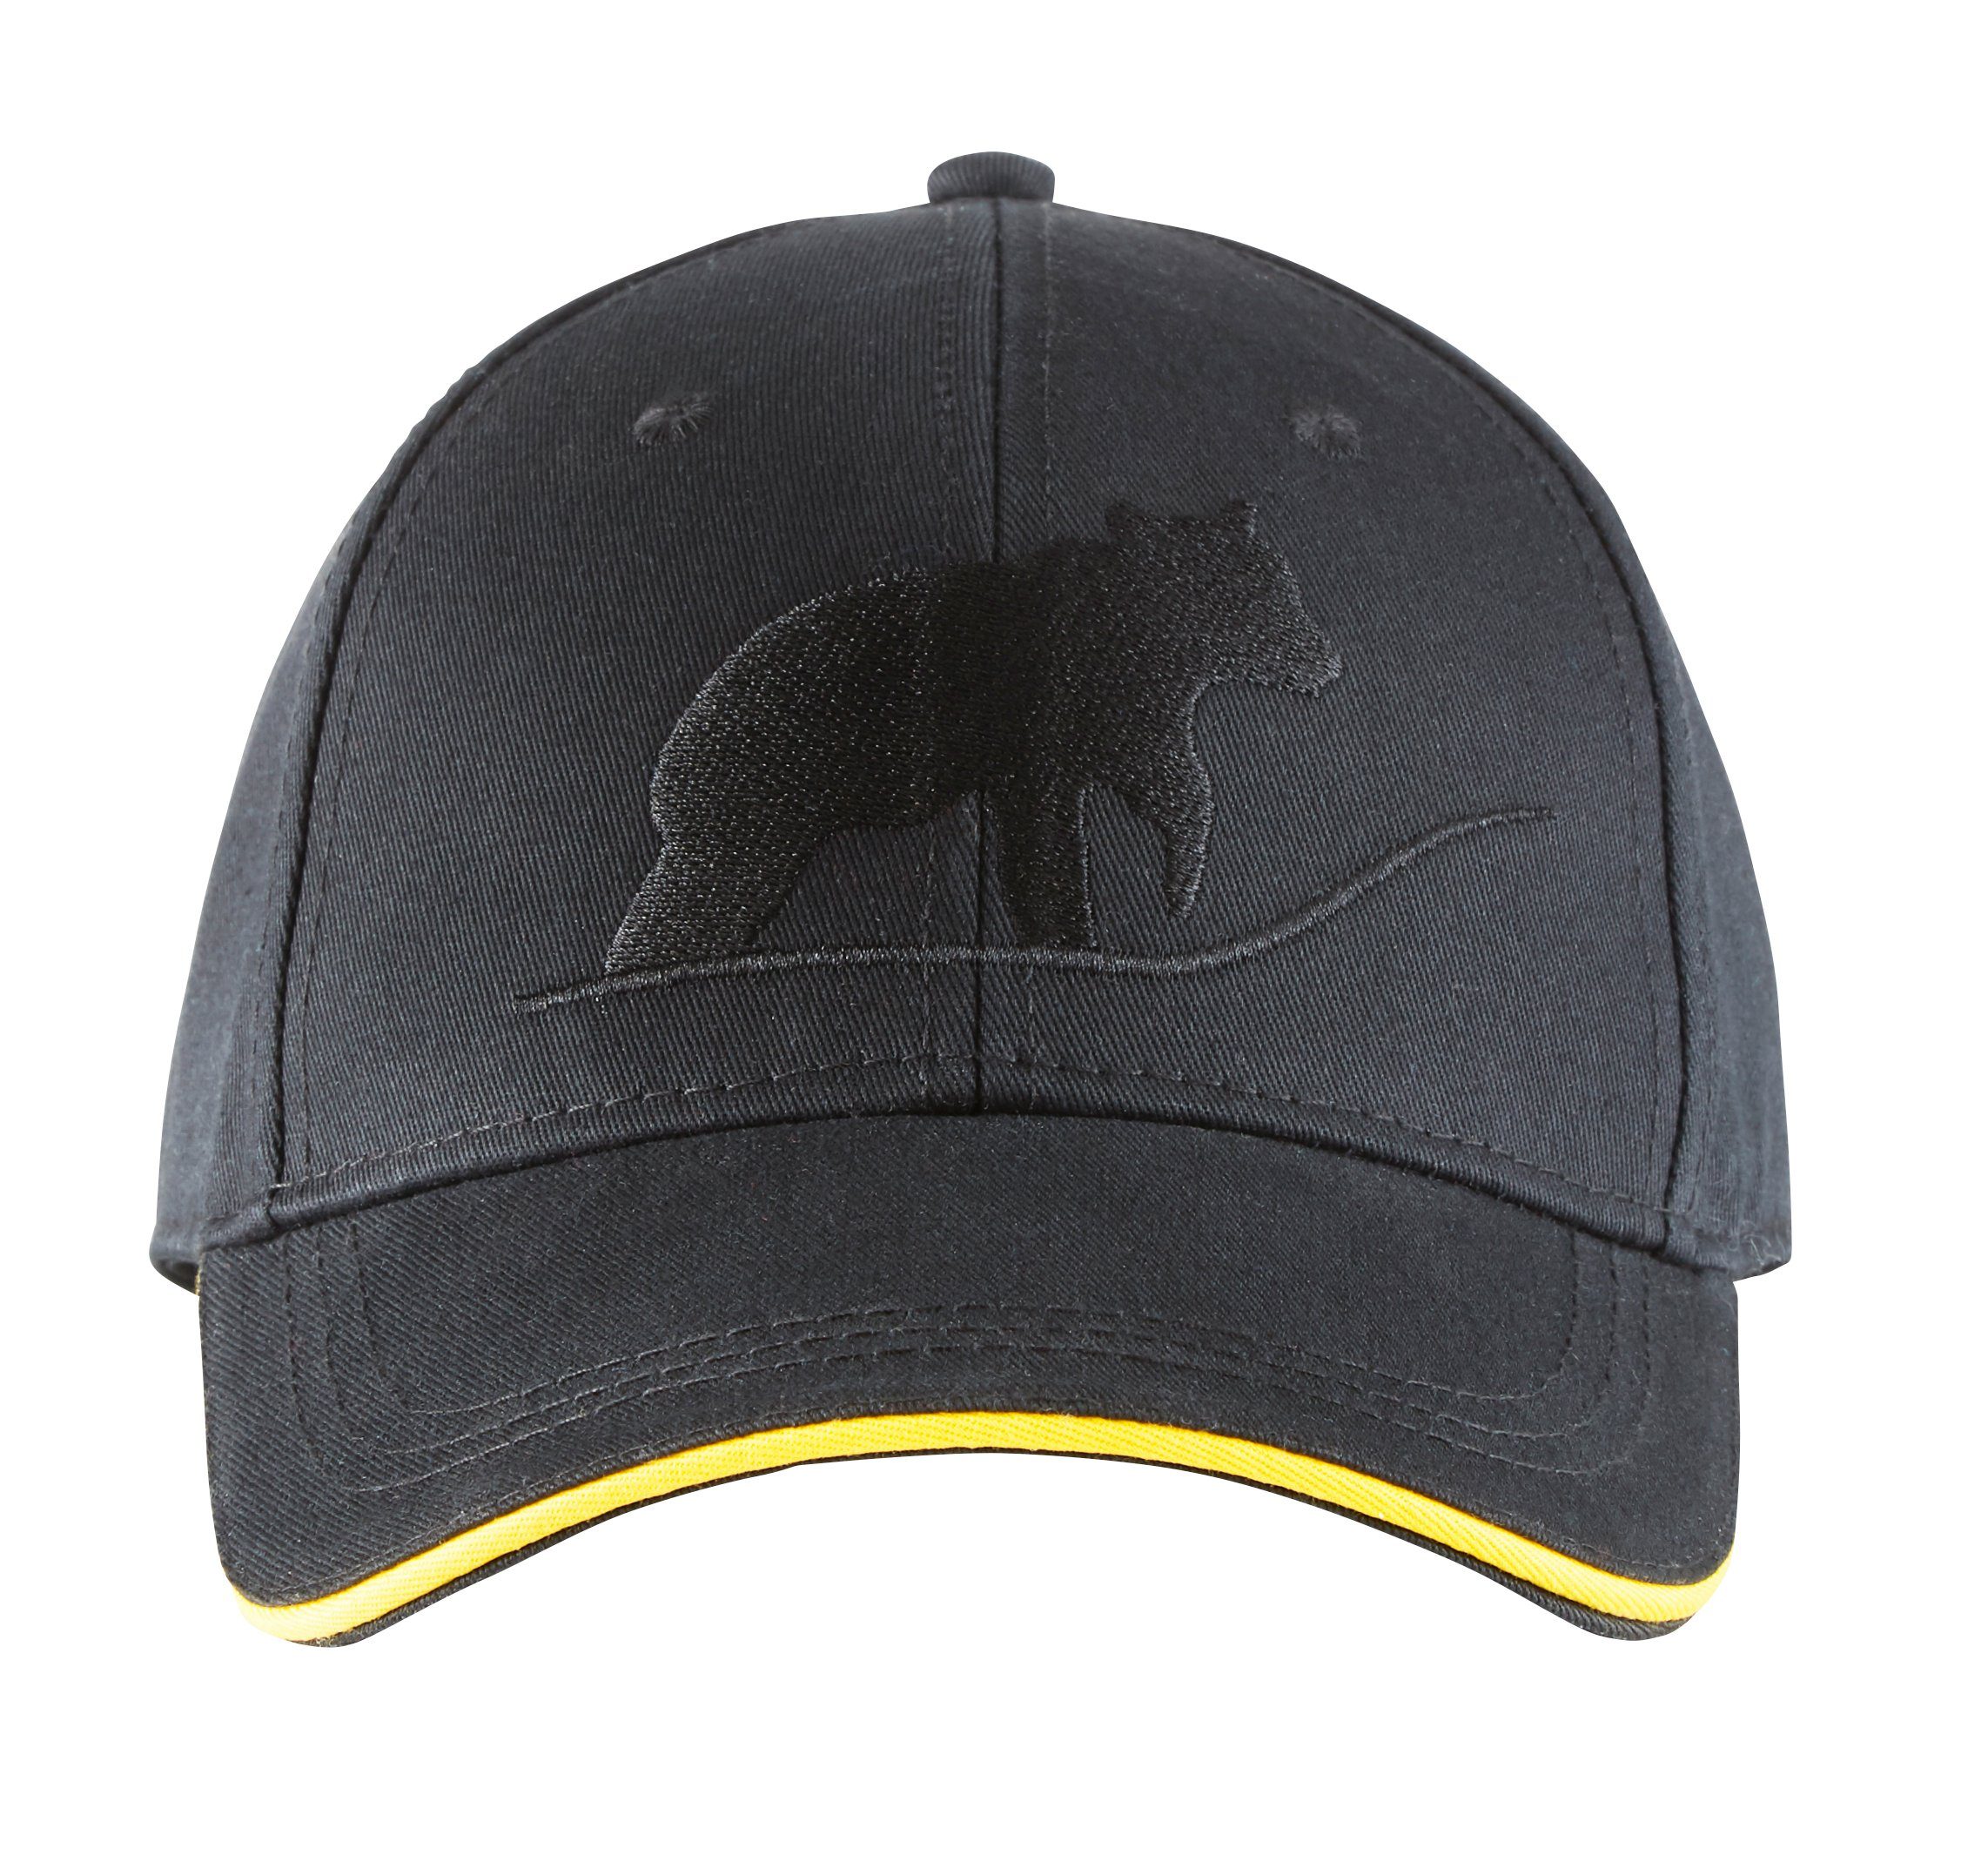 Northern Country Snapback Cap größenverstellbar, schützt beim Arbeiten vor Sonne Black Beauty